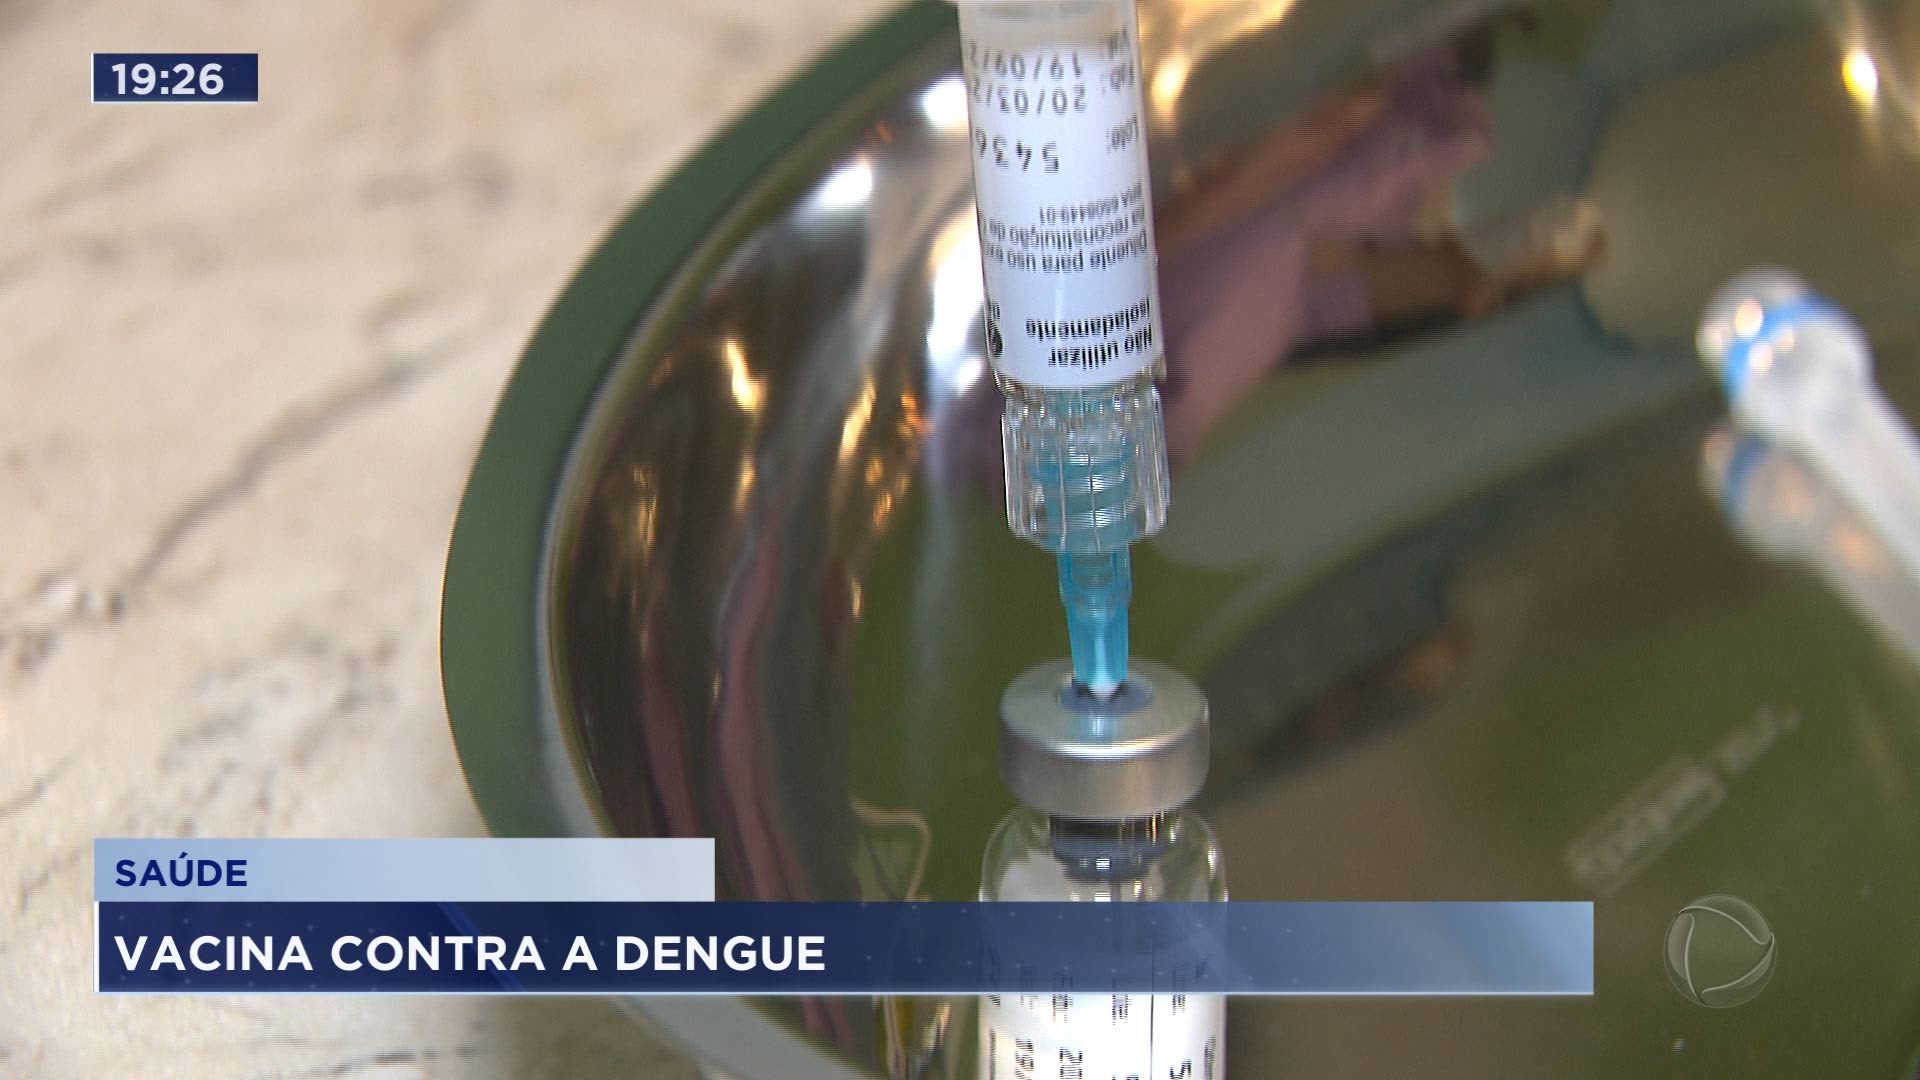 Vídeo: Dengue pode ser prevenida com vacina